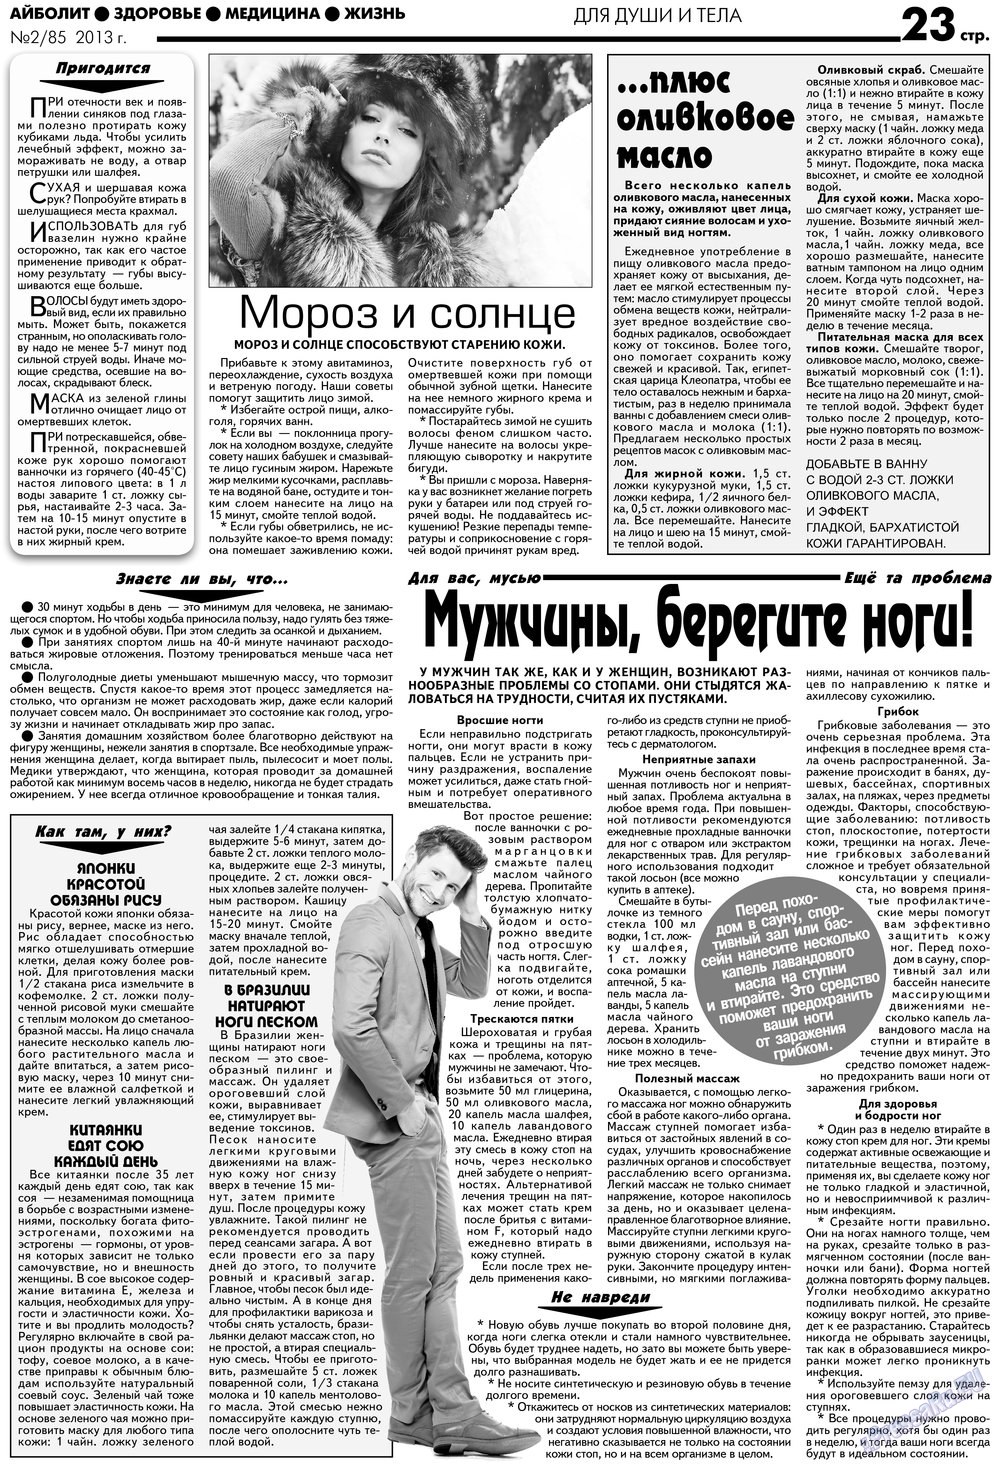 АйБолит, газета. 2013 №2 стр.23